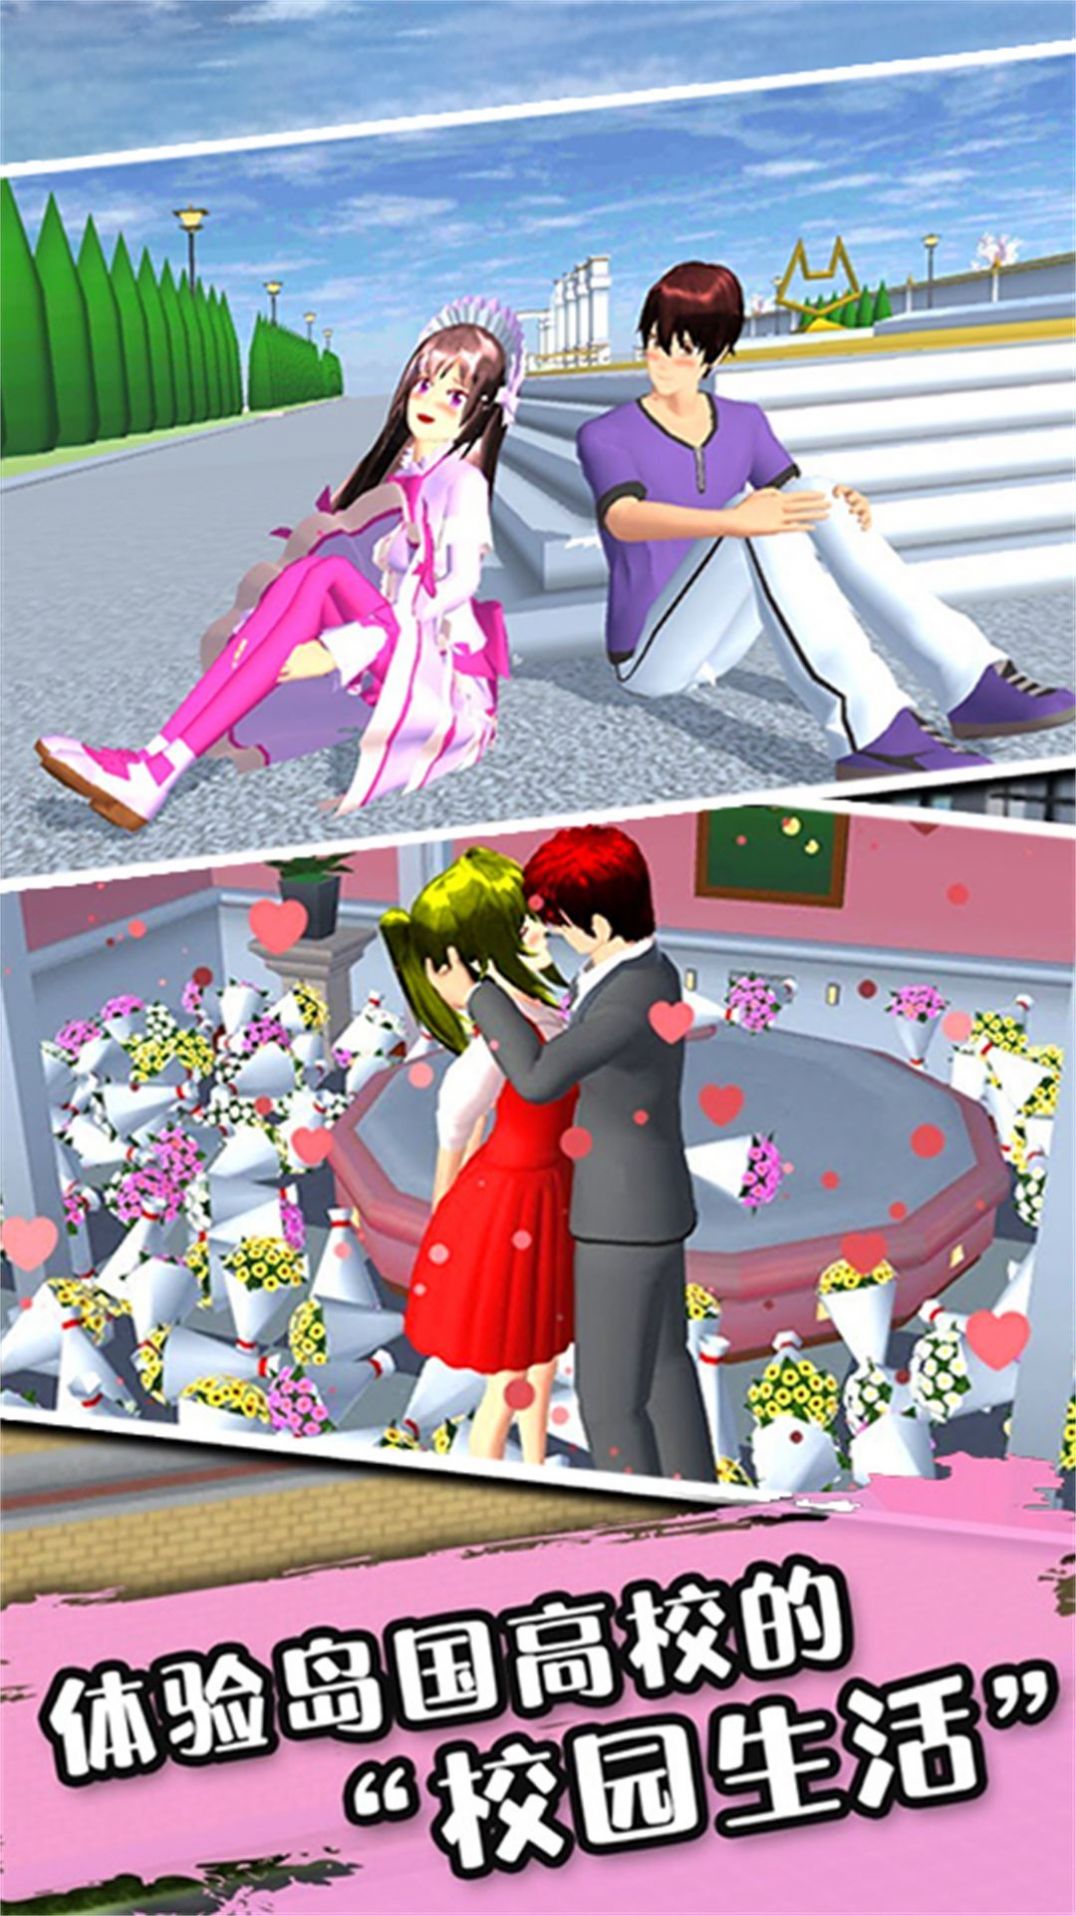 樱花派对游乐园游戏官方安卓版 v1.0截图1